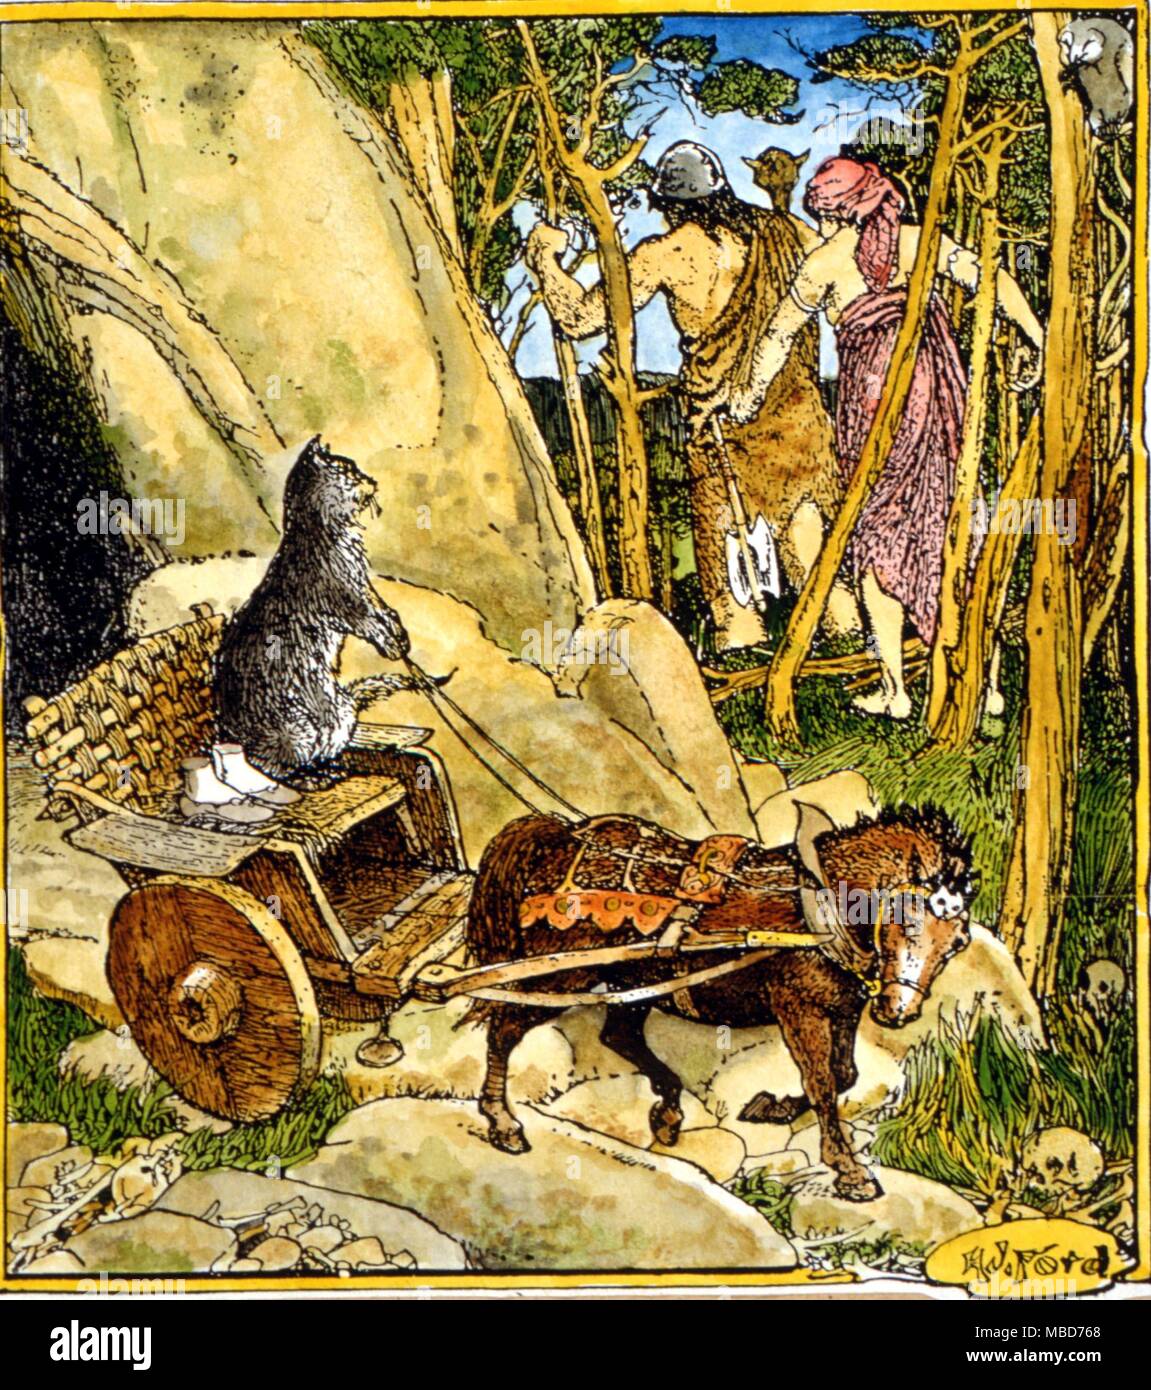 Les chats - Kiss le chat fait sortir l'Ingibjorg pieds de la grotte du géant - illustrations après Ford d'Andrew Lang Livre de fée Brown 1932 Banque D'Images